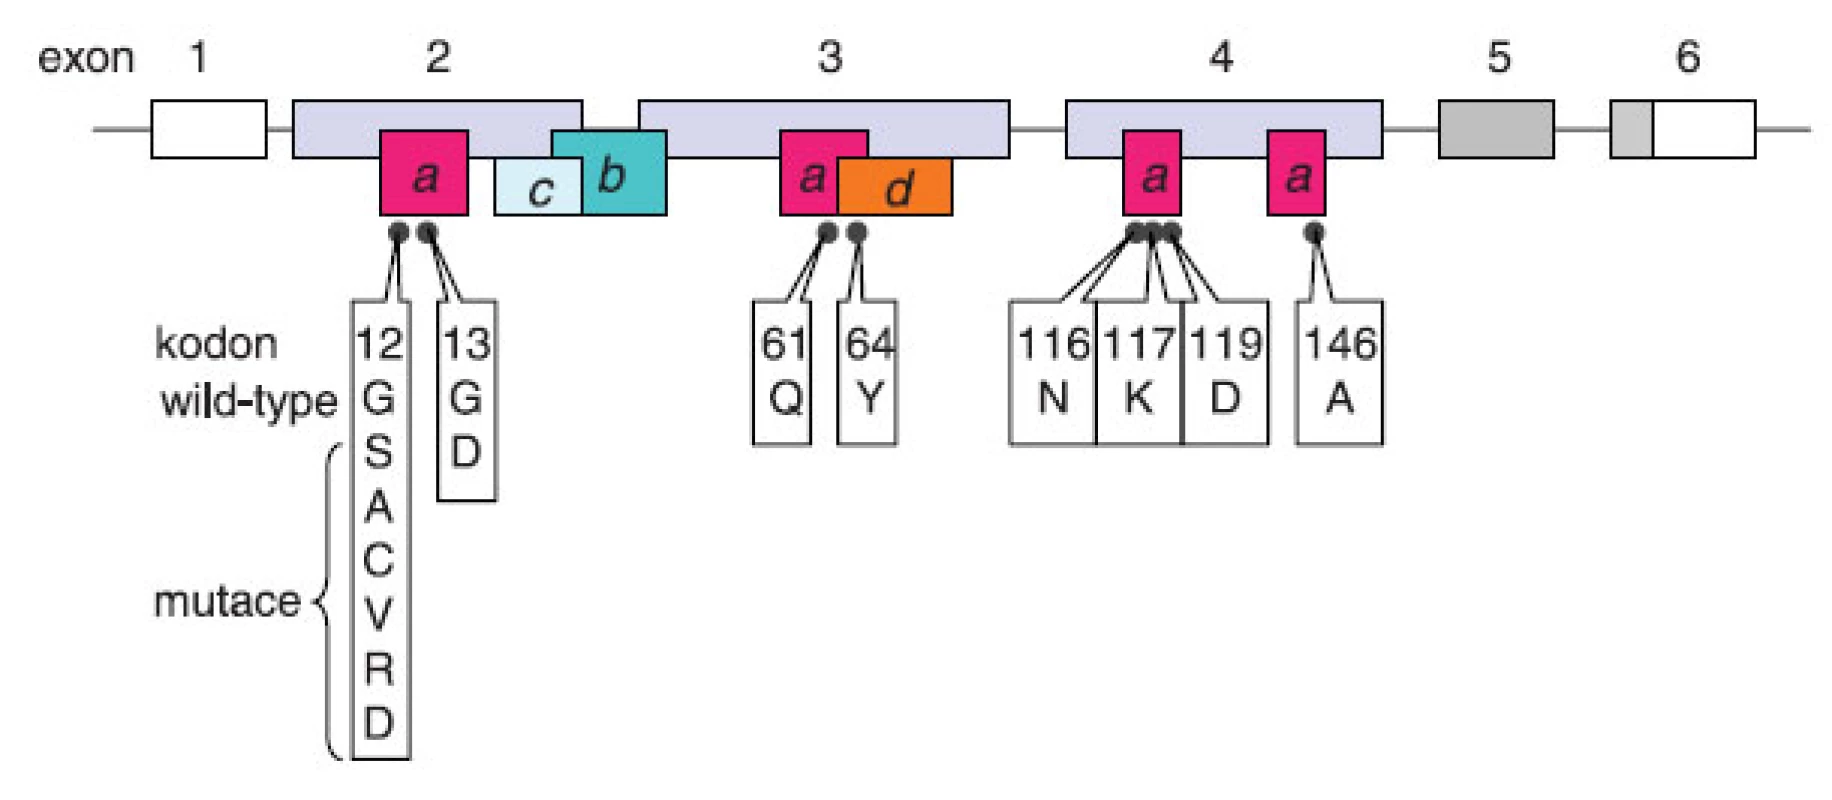 Onkogenní mutace genu KRAS. Gen se skládá z 6 exonů označovaných v literatuře 1, 2, 3, 4, 5, 6 (4), případně -1, 1, 2, 3, 4A a 4B (25). V současné terminologii používané v souvislosti s testováním onkogenních mutací u pacientů s kolorektálním karcinomem převažuje označení 1–6. Exon 1 není překládán (prázdný box), šedě označené exony 5 a 6 podléhají alternativnímu sestřihu se značnou převahou izoformy KRASB (KRAS4B) s translací exonu 6 bez exonu 5. Exony 2–4 jsou invariantní kódující exony. Boxy s písmeny znázorňují funkční oblasti proteinu v kontextu jejich uspořádání v genu: (a) místo vazby GTP, (b) místo vazby efektorů, (c) switch I: interakce efektorů a GAP, (d) switch II: interakce s GEF. Černé body představují kodony, u jejichž mutací byl popsán onkogenní potenciál; u kodonů 12 a 13 jsou mimo aminokyseliny kódované nemutovaným tripletem uvedeny také aminokyseliny zařazované následkem mutace.